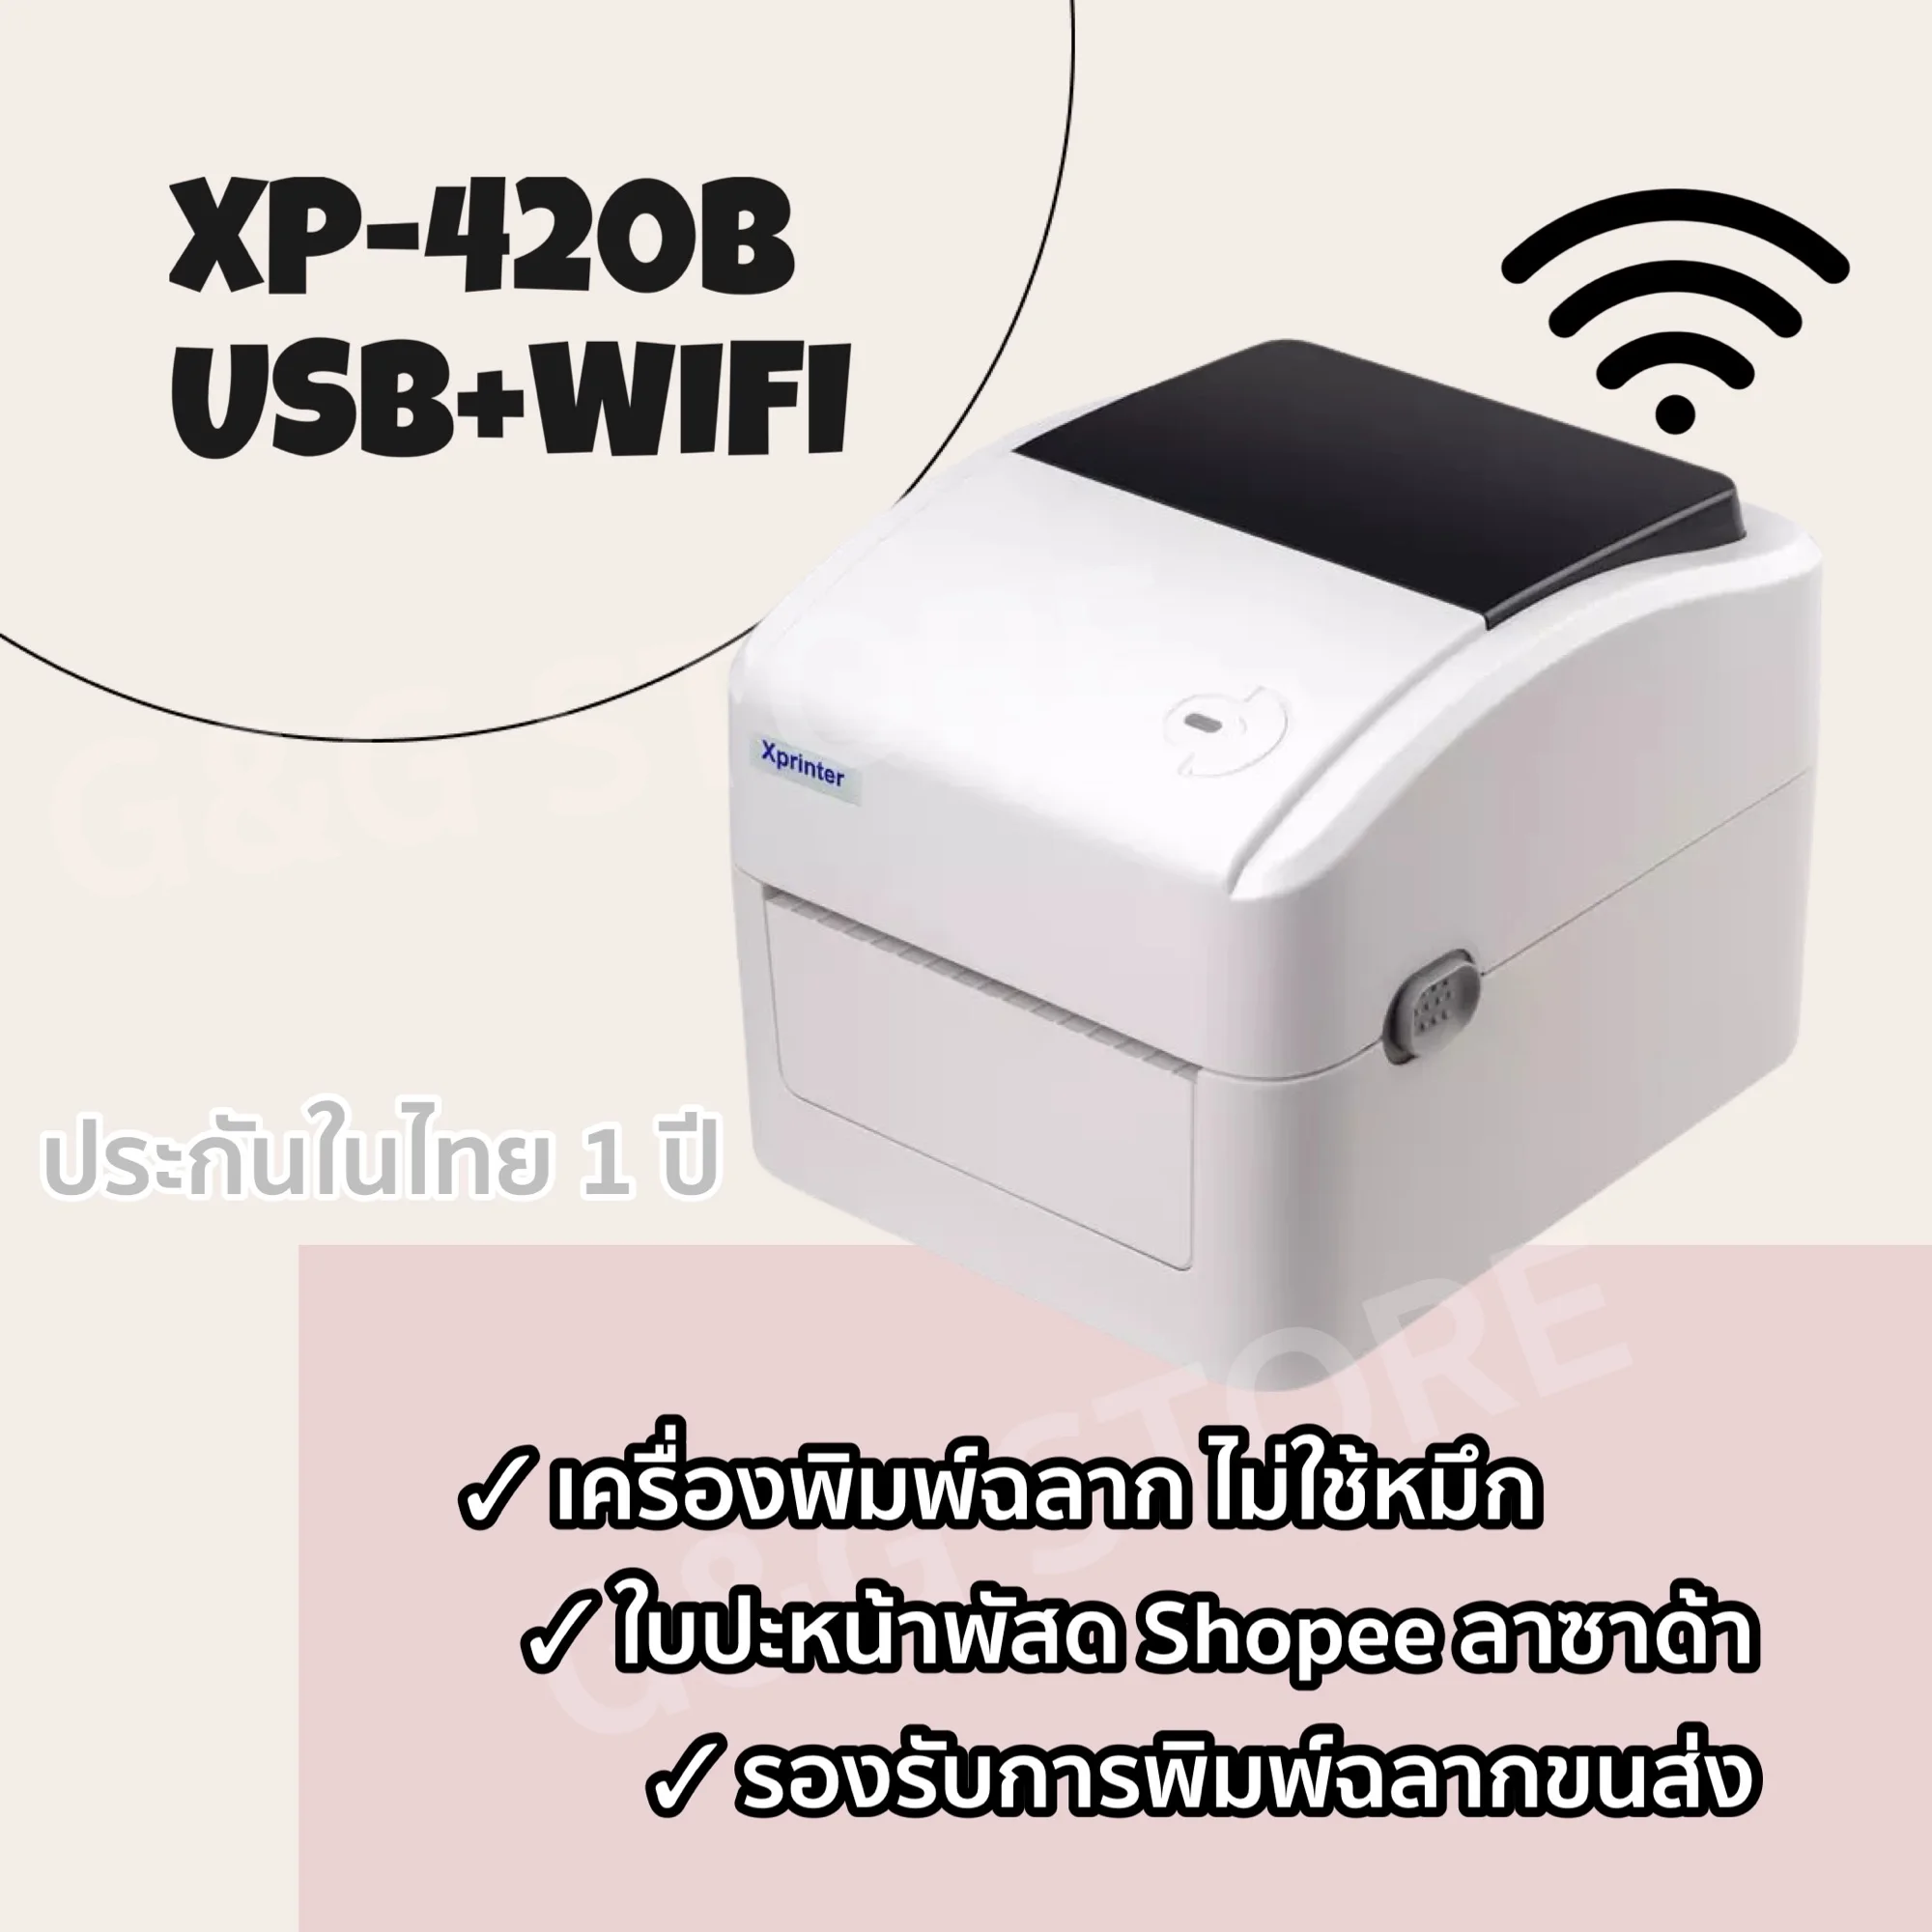 เครื่องพิมพ์ฉลาก XP-420B รุ่น USB และ USB+WIFI รองรับการพิมพ์ทุกขนส่ง